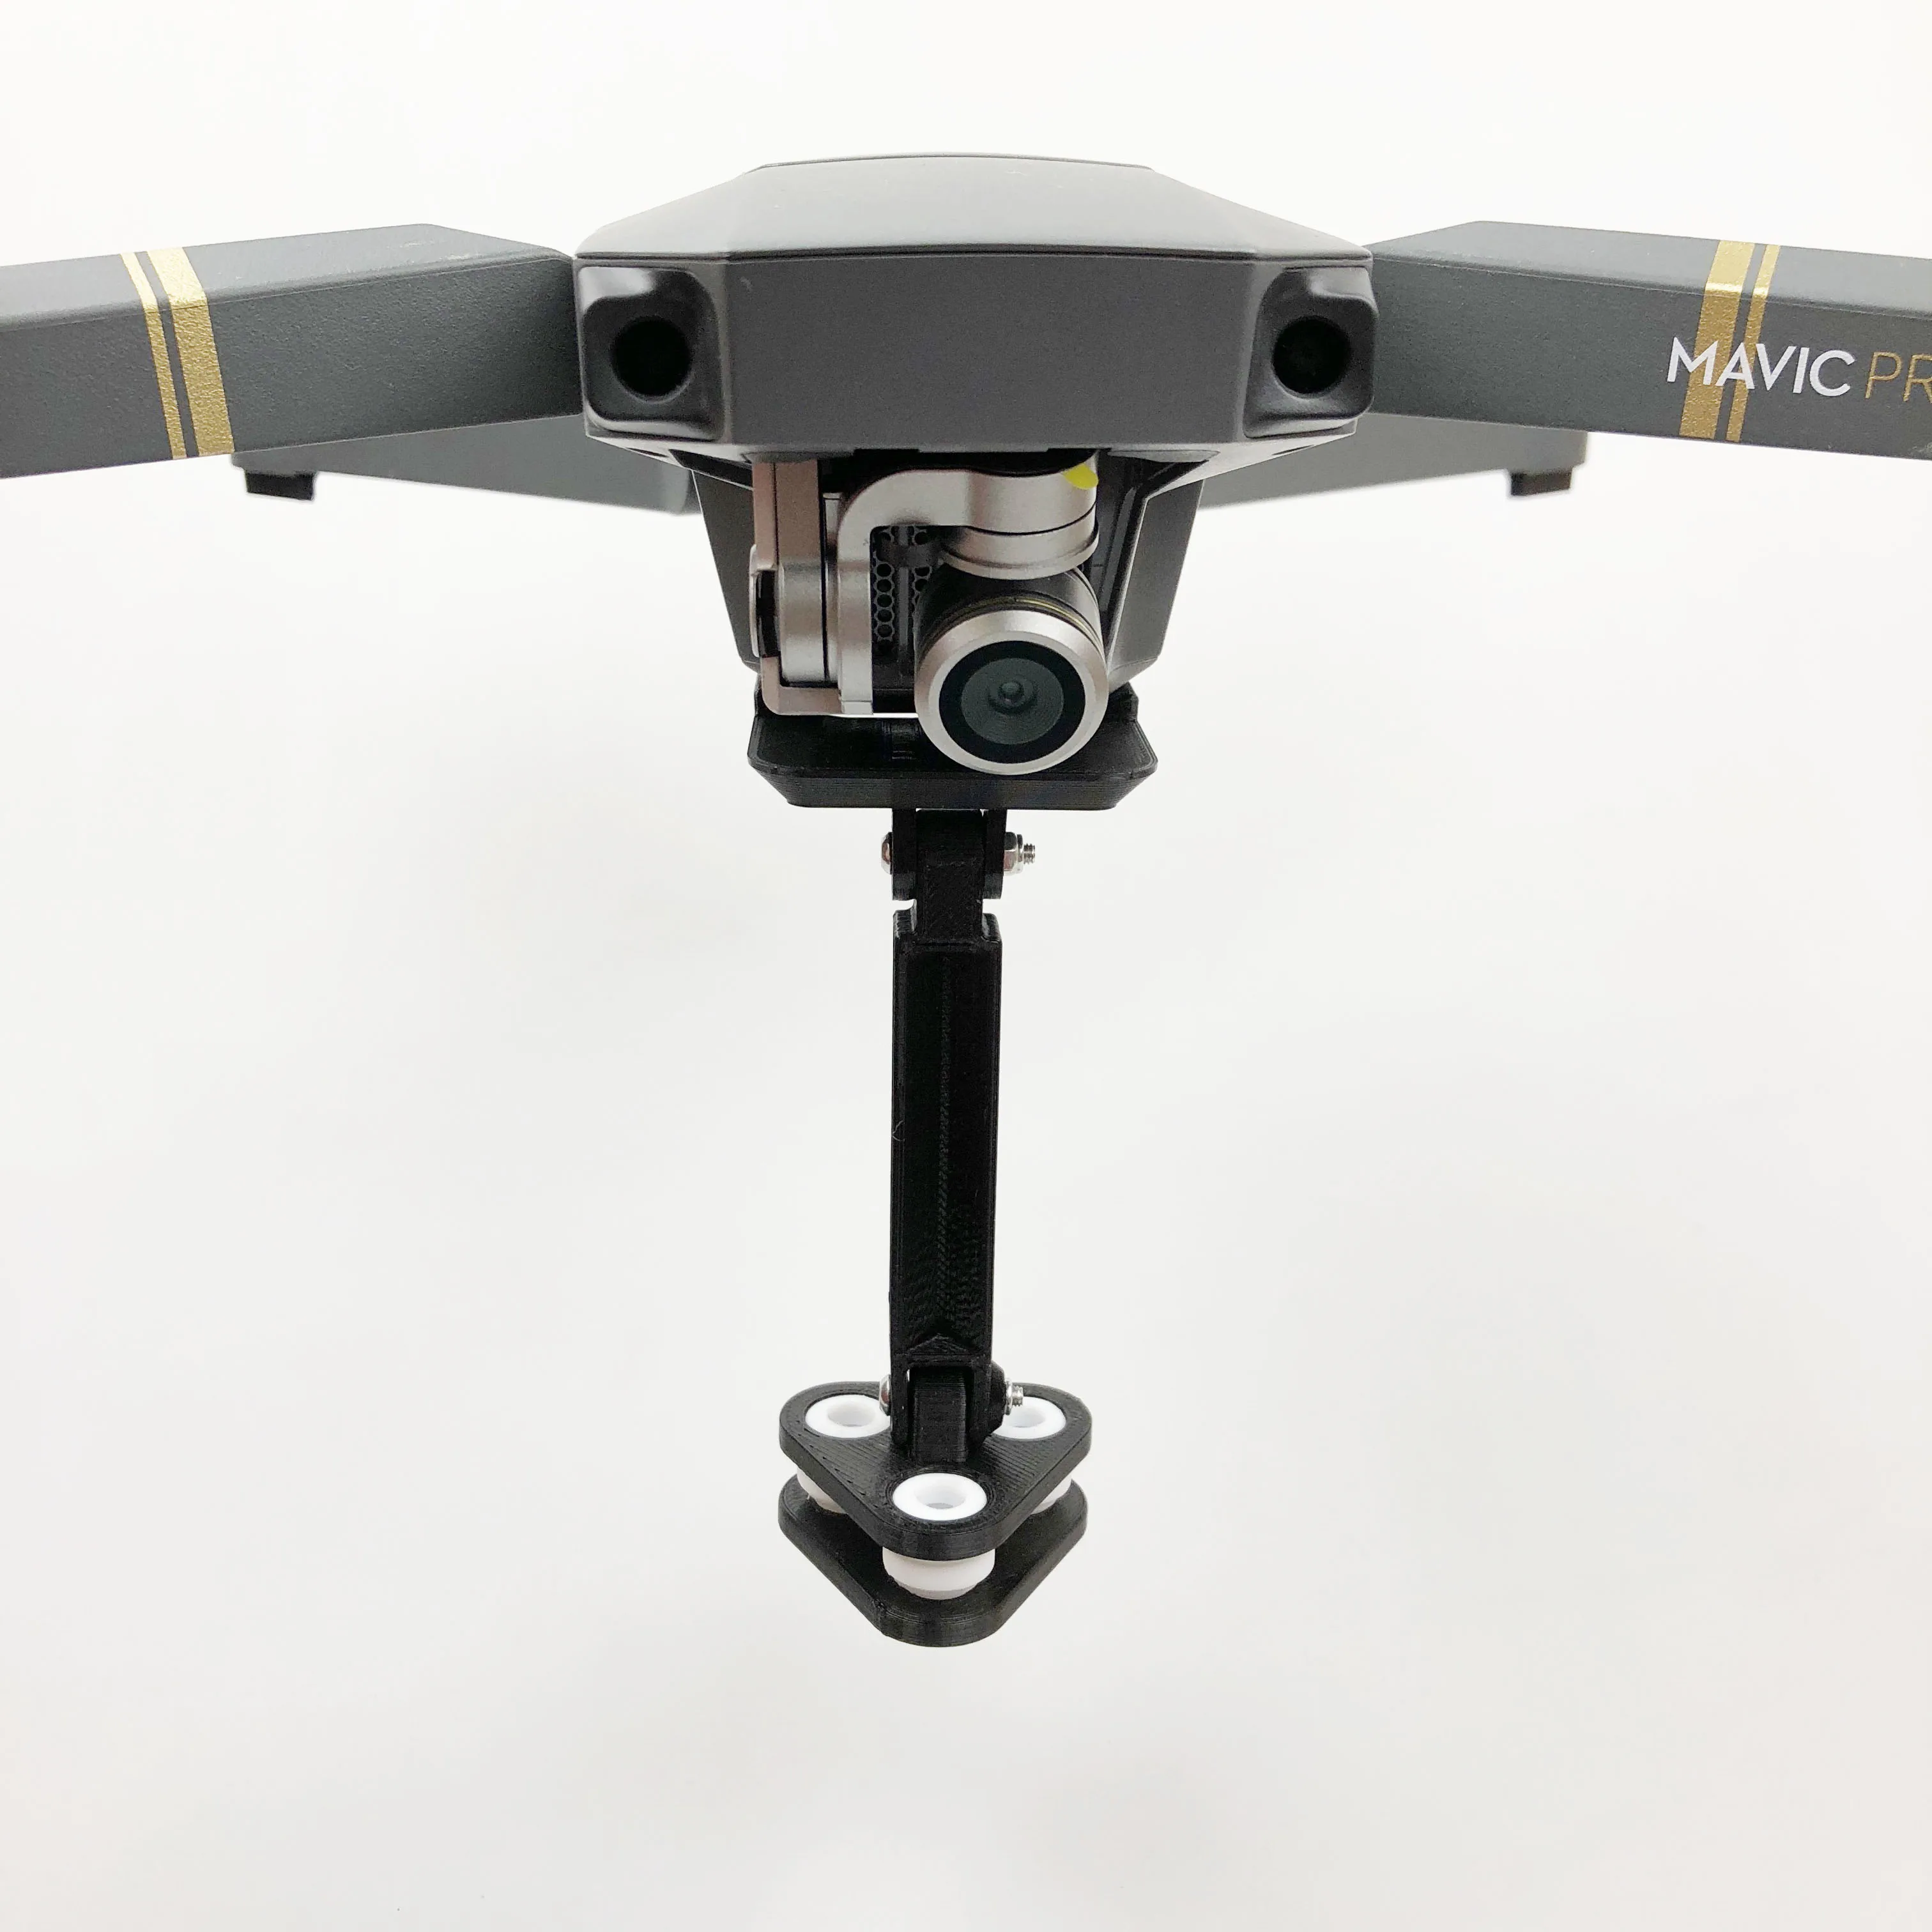 Dron mavic pro aparat panoramiczny 360 stopni wstrząsy uchwyt absorbera uchwyt na uchwyt do powieszenia płyta ochronna stałe adapter zaciskowy